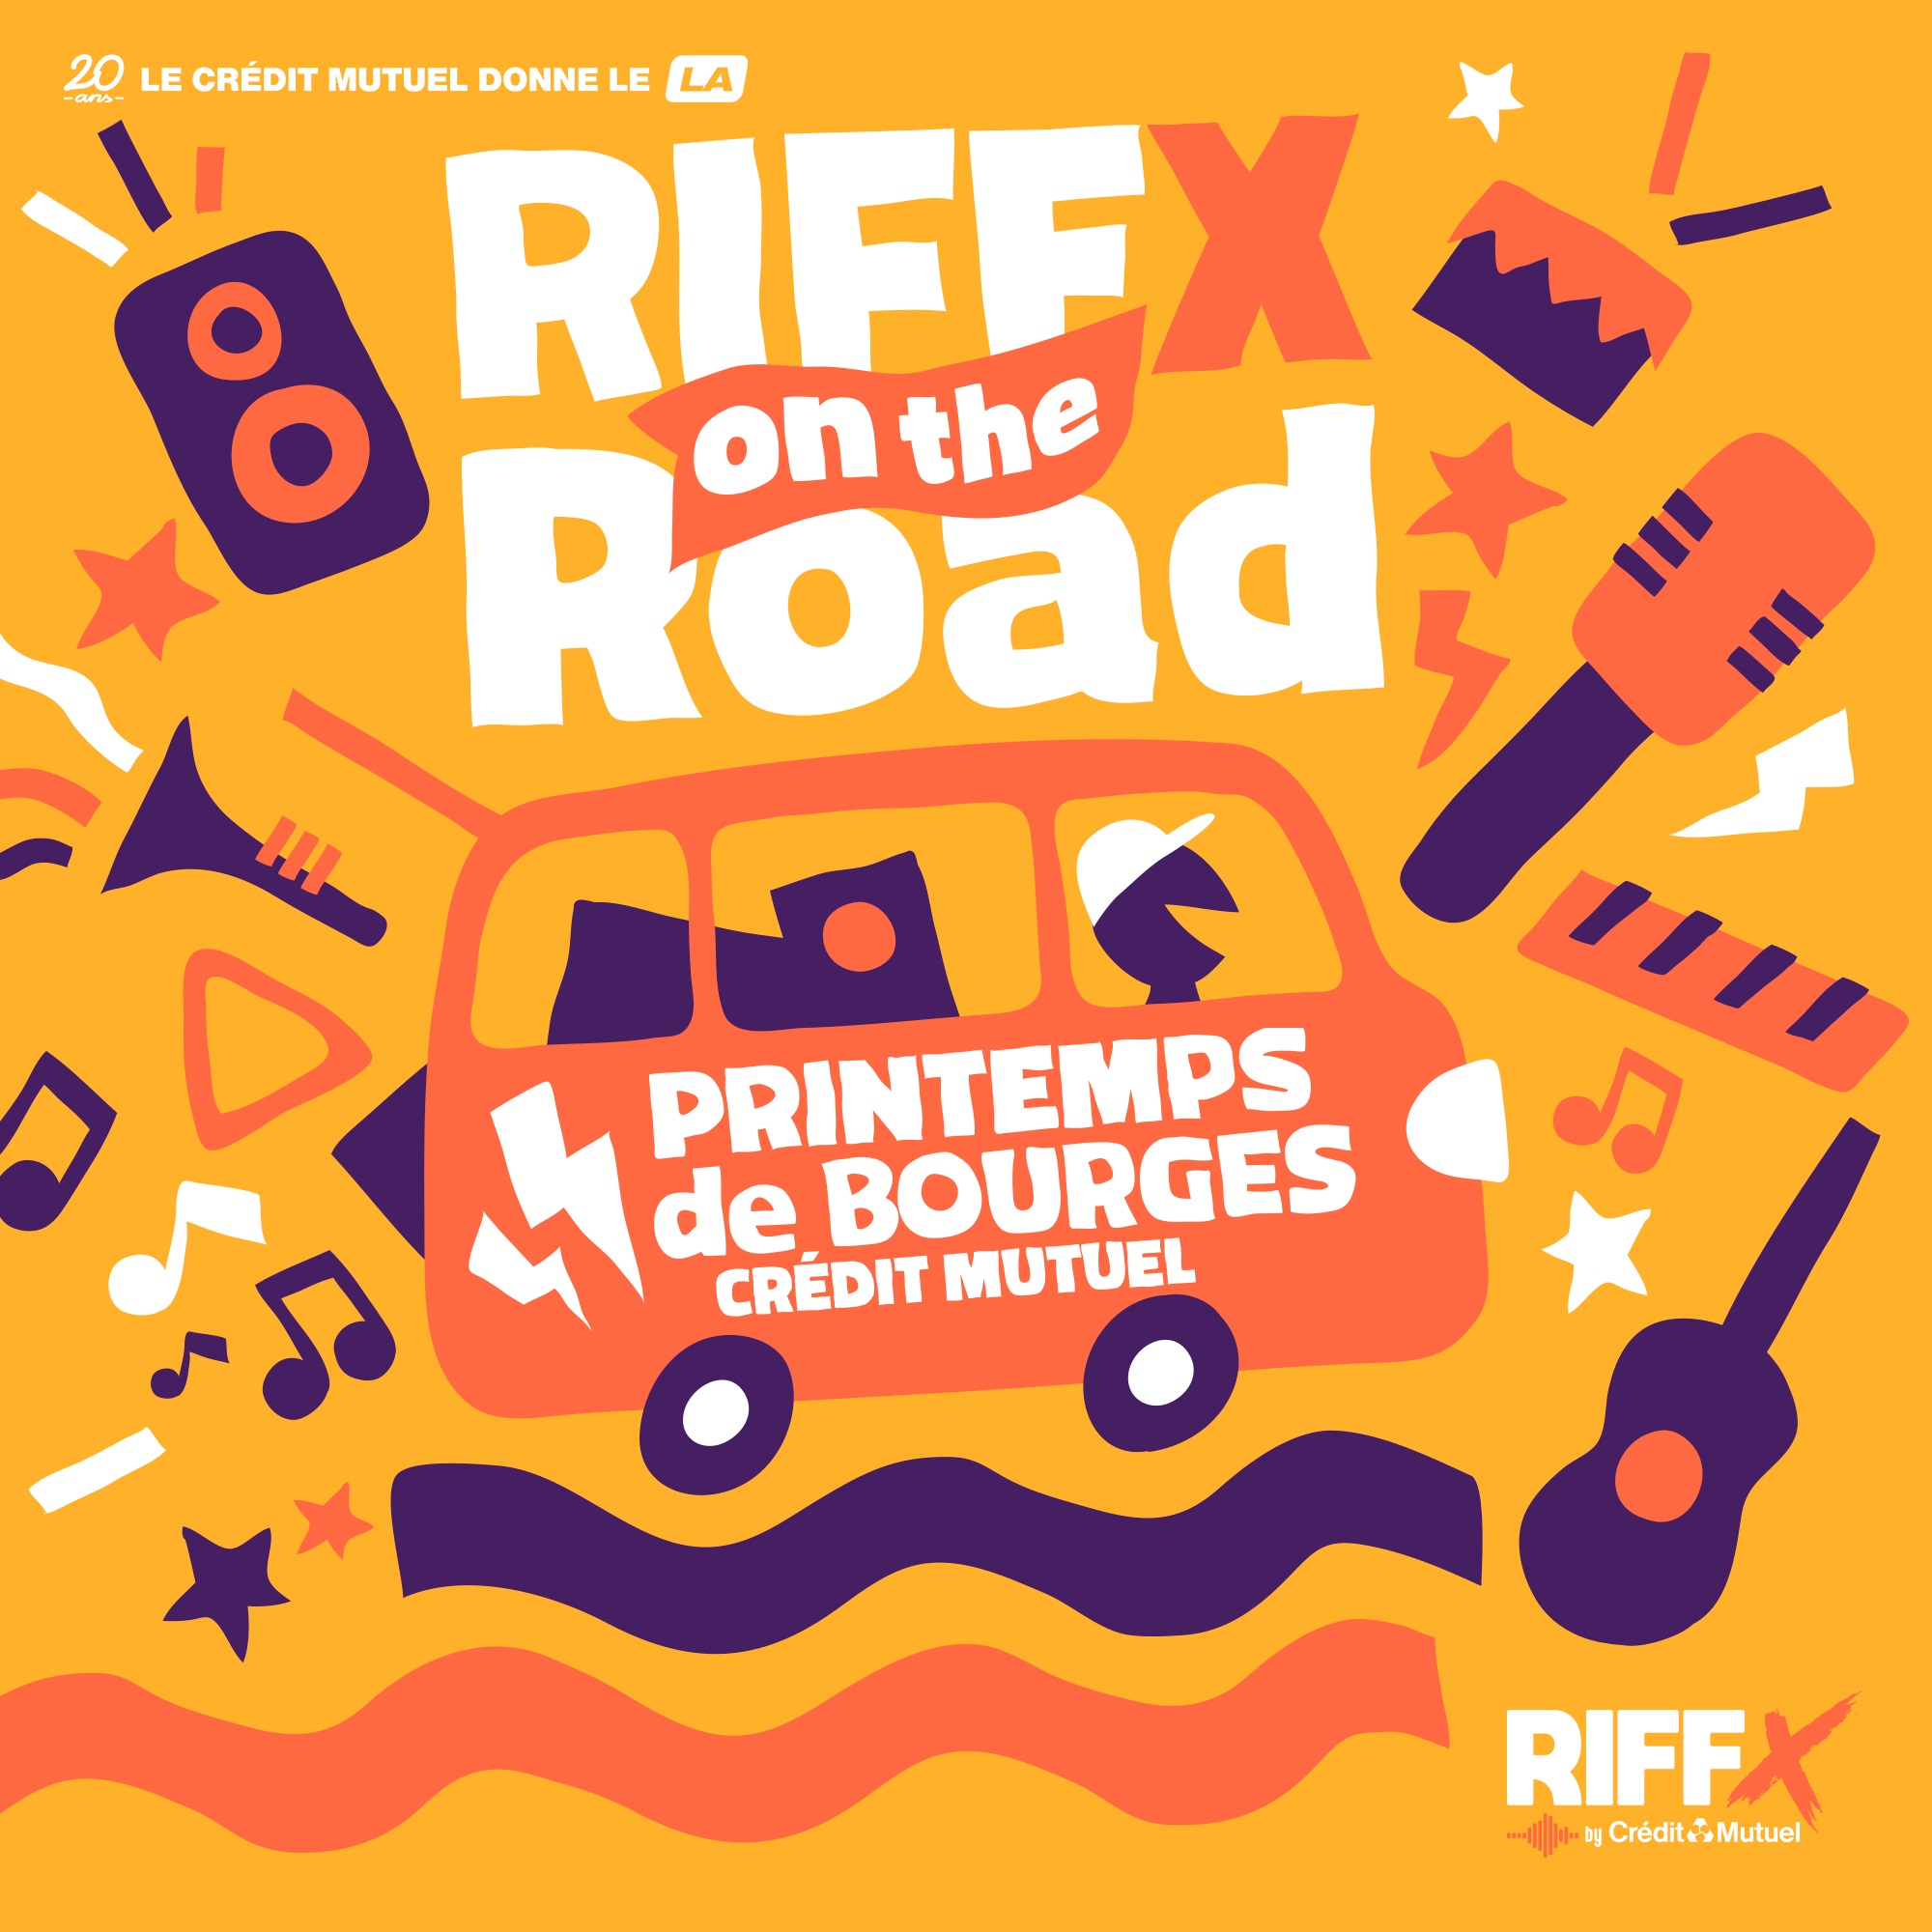 RIFFX on the Road : Épisode 4 au Printemps de Bourges Crédit Mutuel